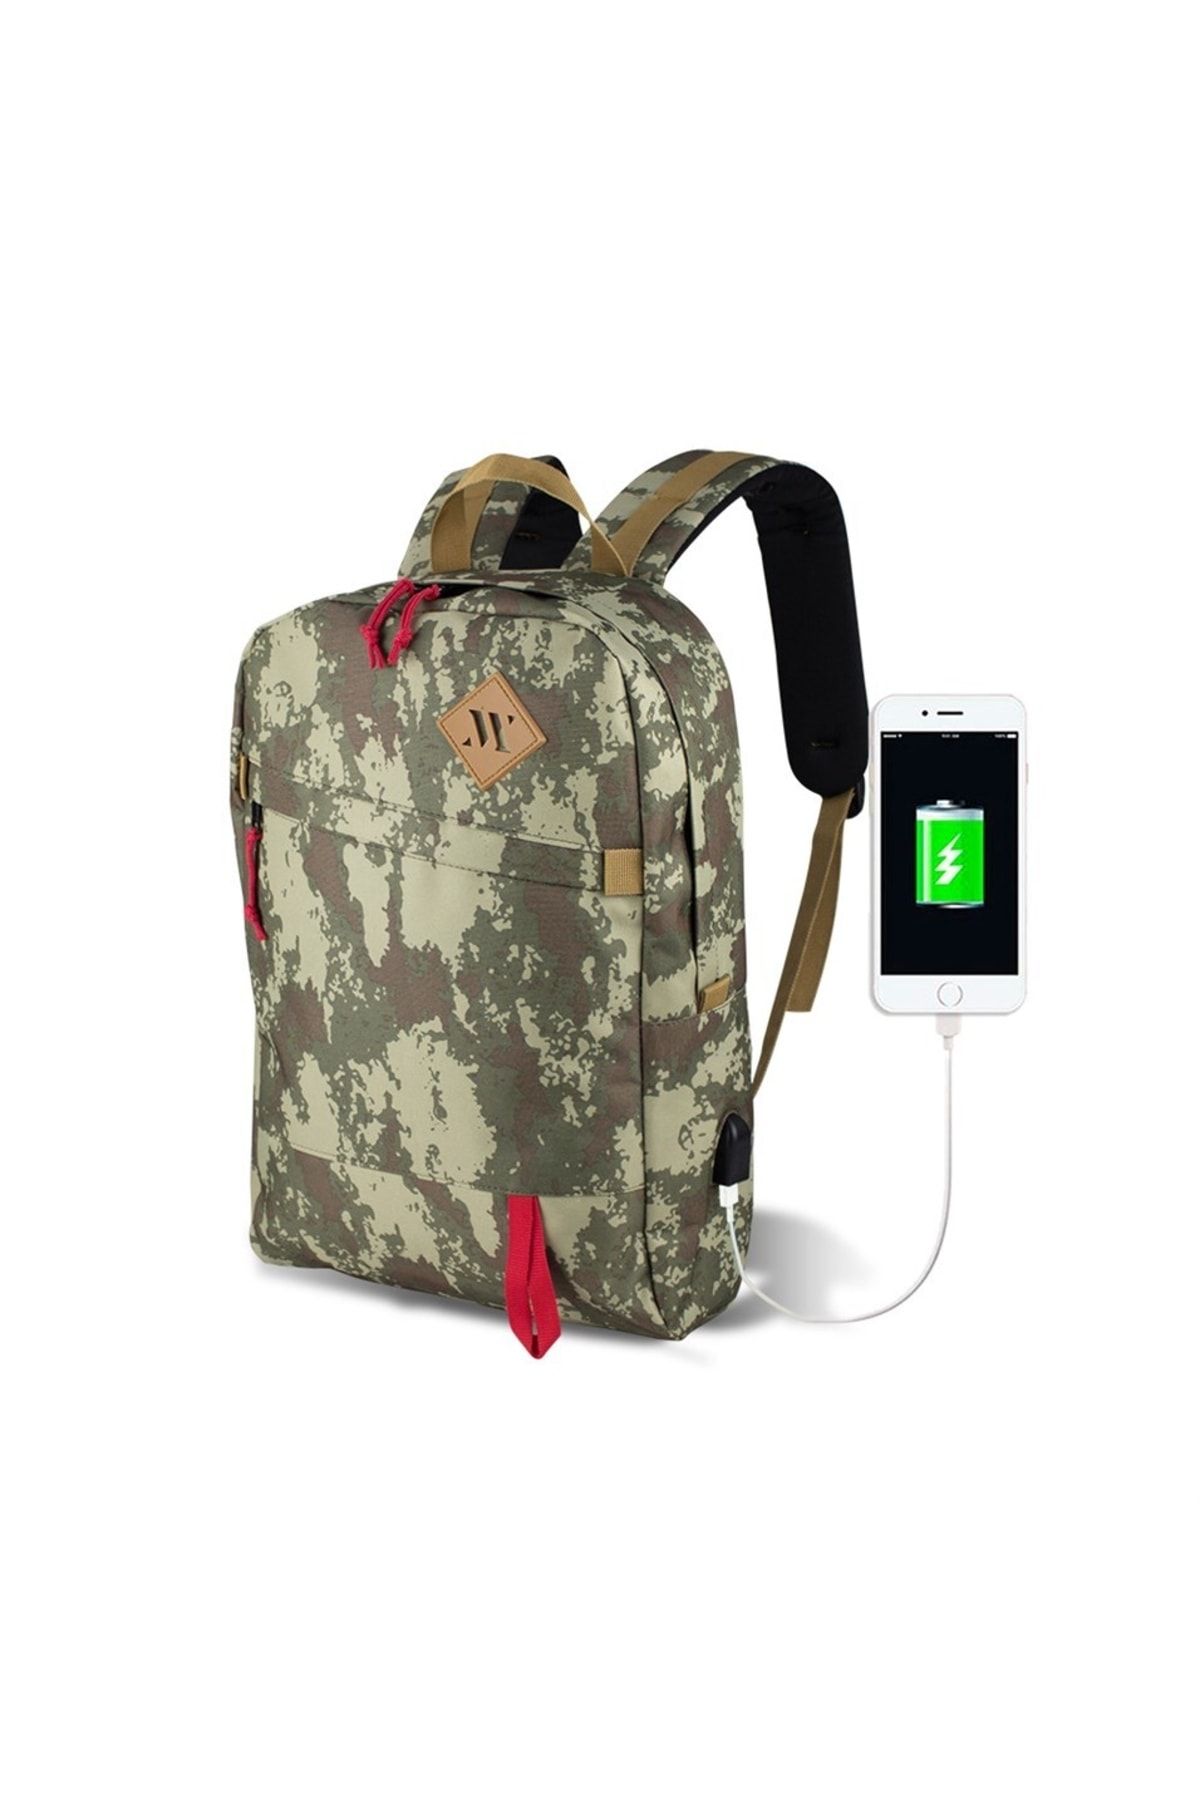 My Valice Smart Bag Freedom Usb Şarj Girişli Akıllı Laptop Sırt Çantası Kamuflaj